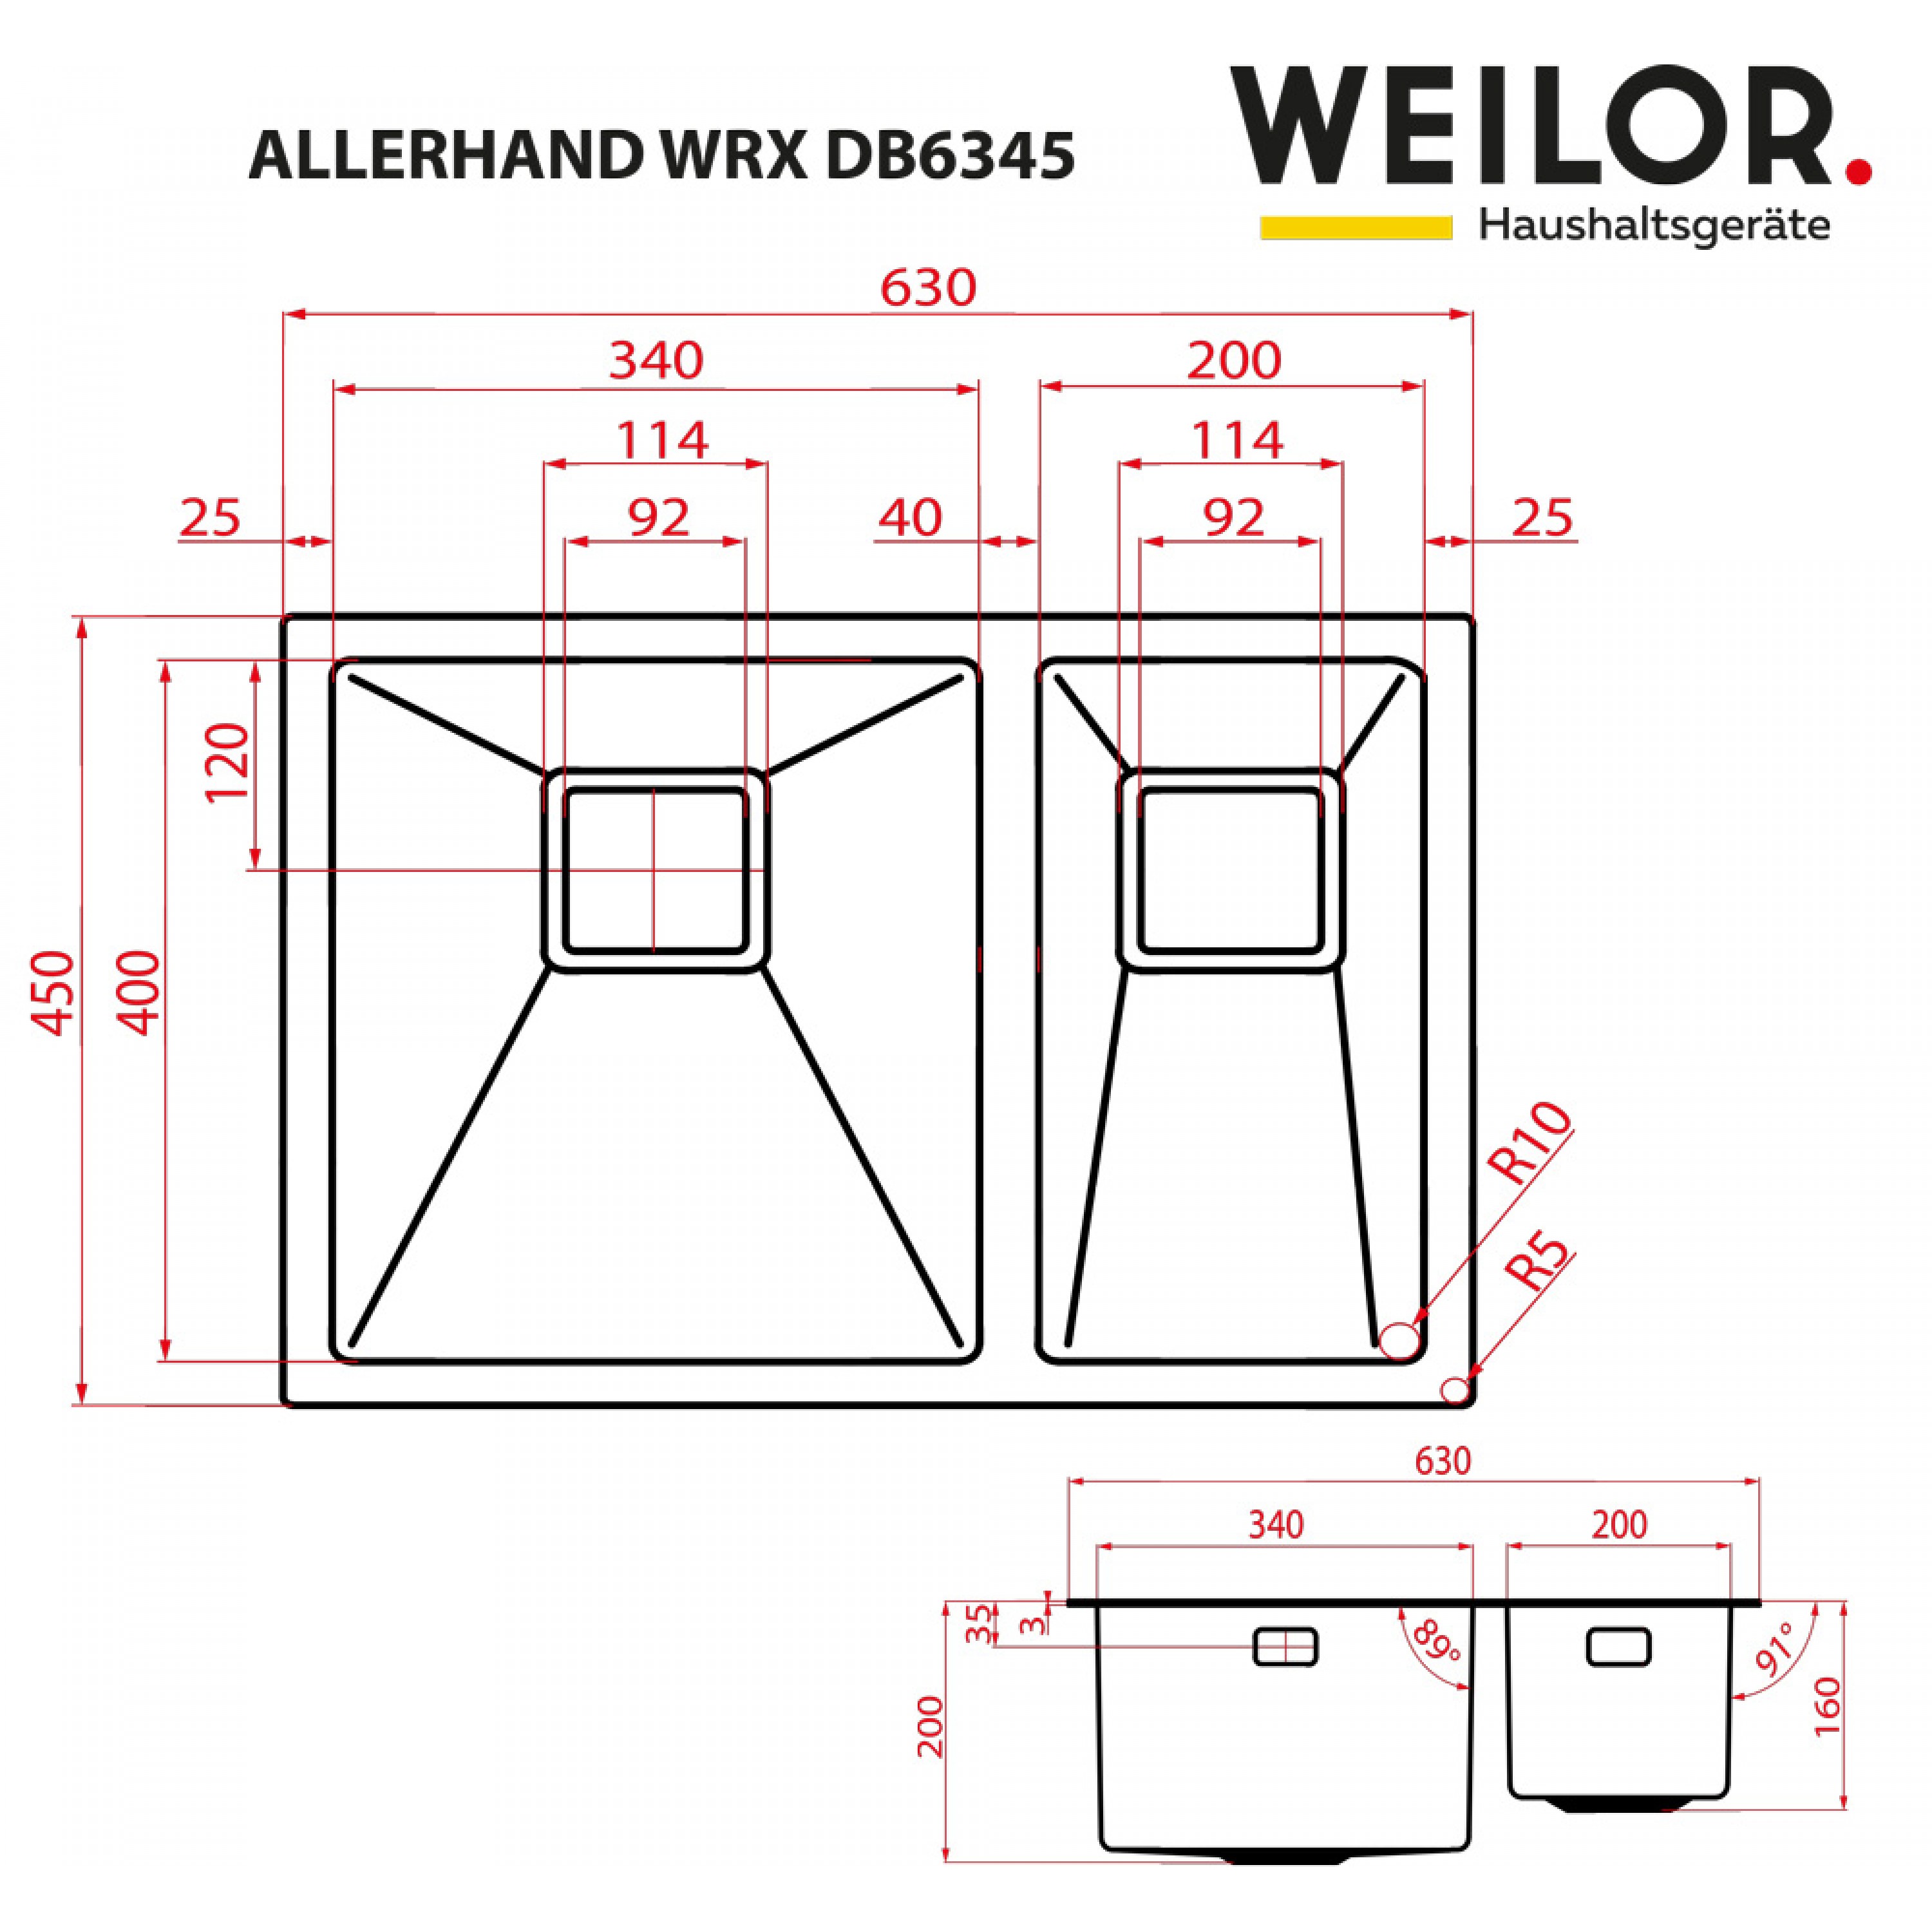 Weilor ALLERHAND WRX DB6345 Габаритные размеры